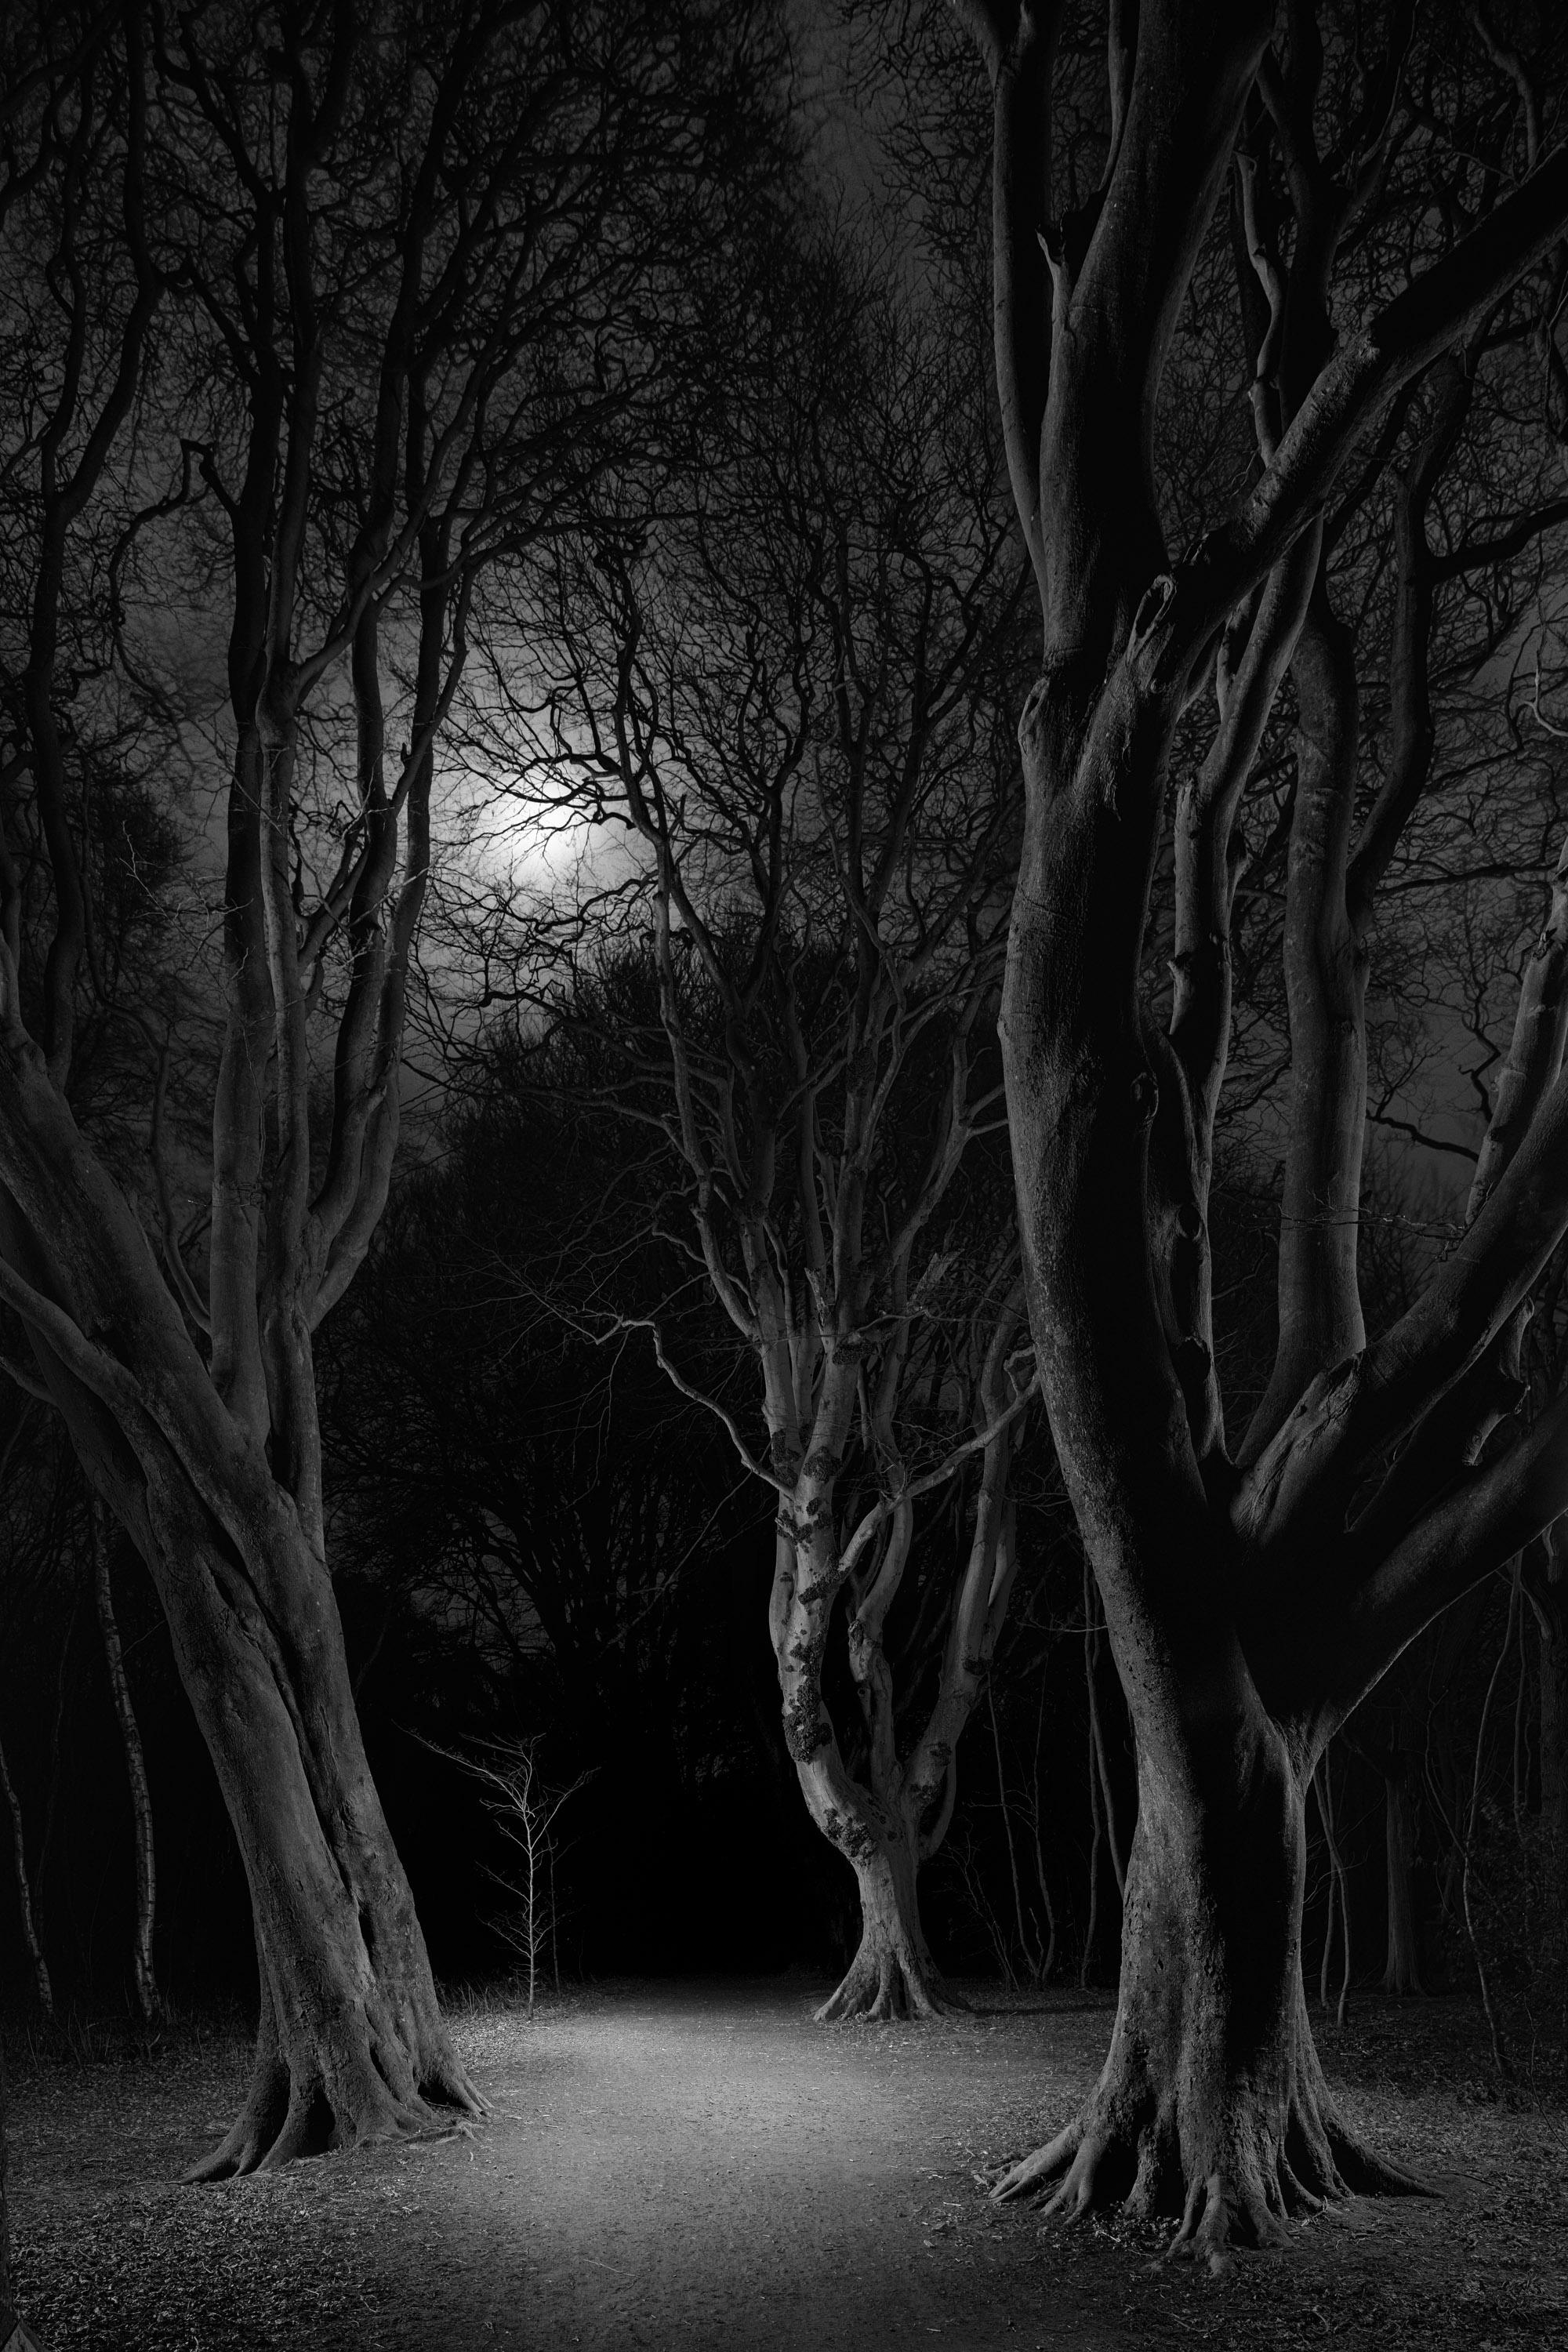 Schwarzes und weißes Mondlicht hinter den Bäumen und der Weg im Wald bei Nacht